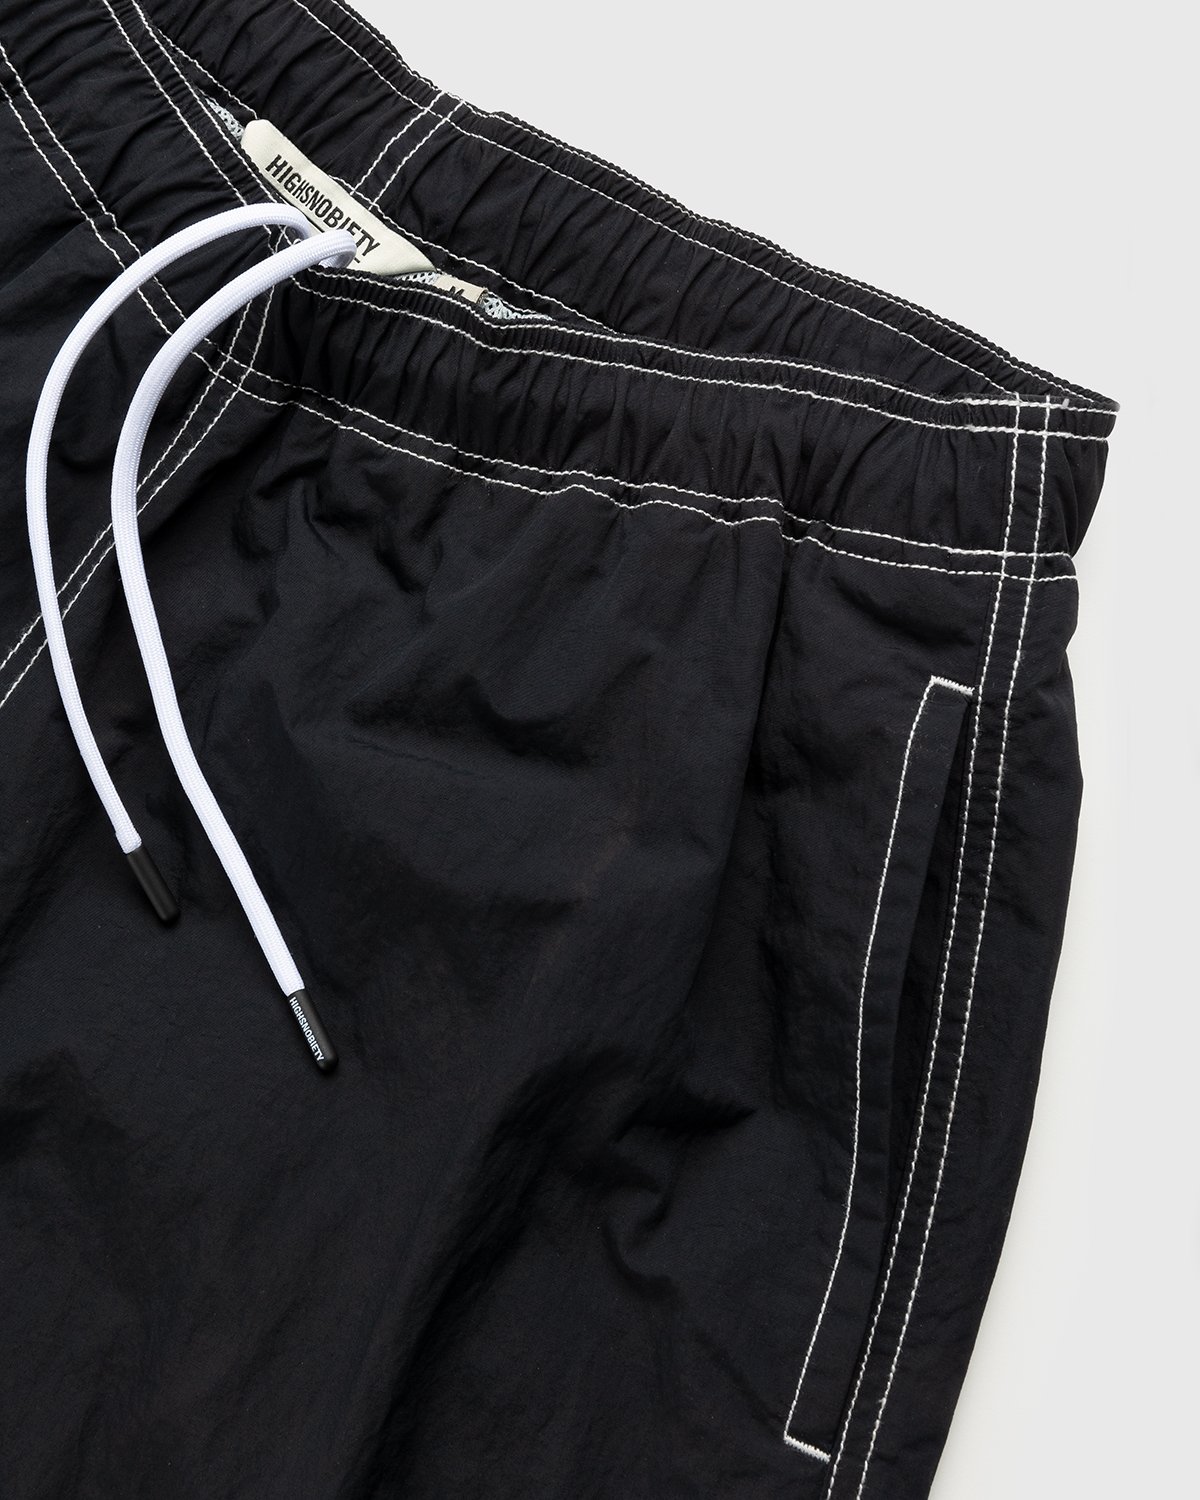 Highsnobiety - Contrast Brushed Nylon Water Shorts Black - Clothing - Black - Image 4